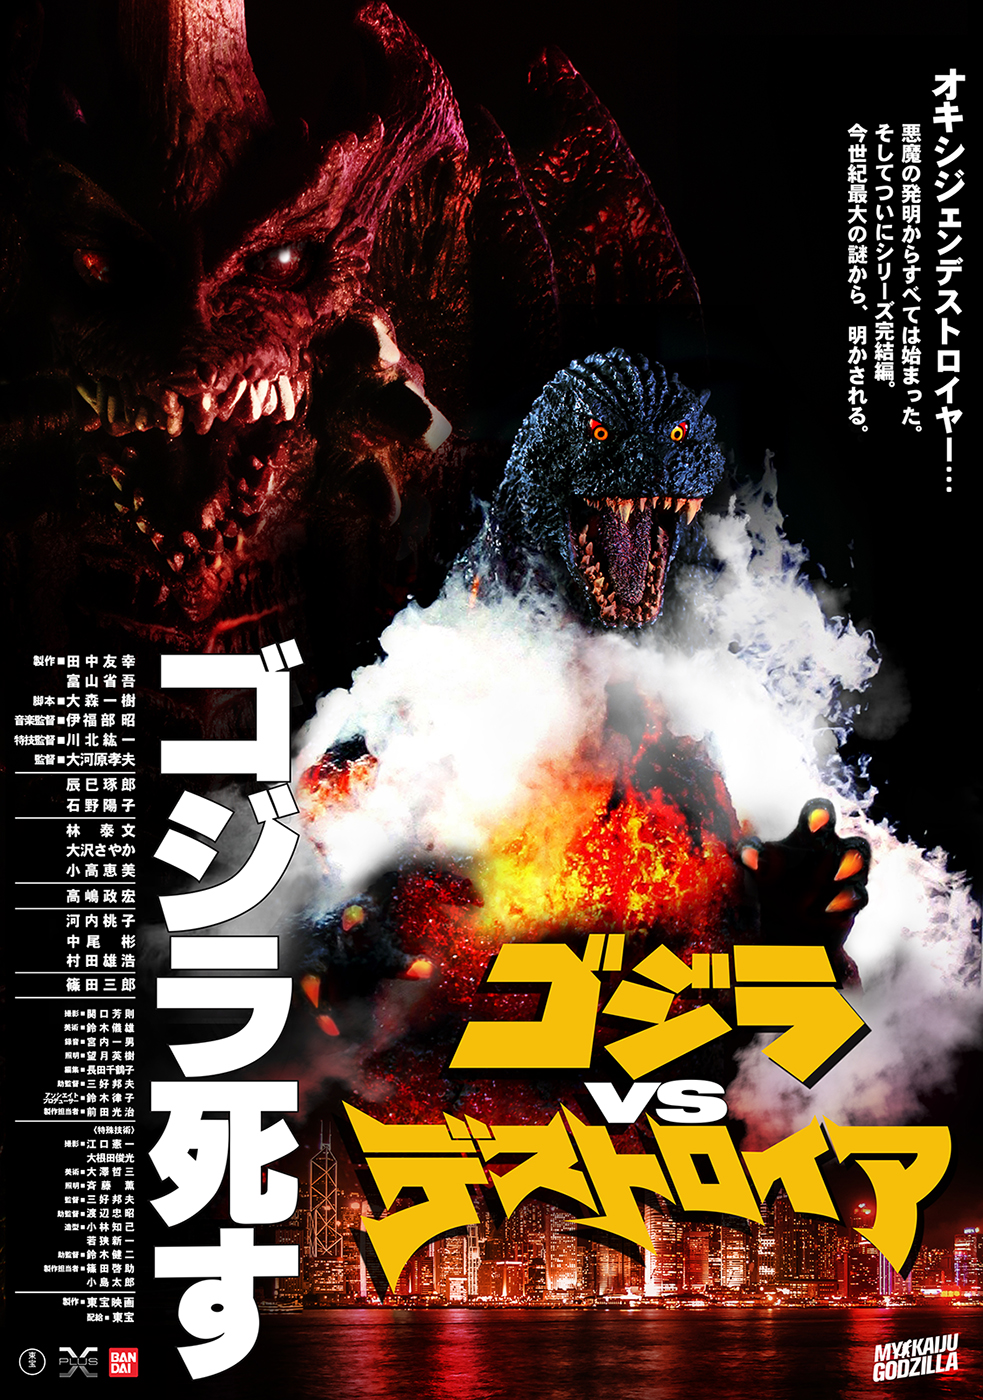 Godzilla Vs Destroyah Mykaiju